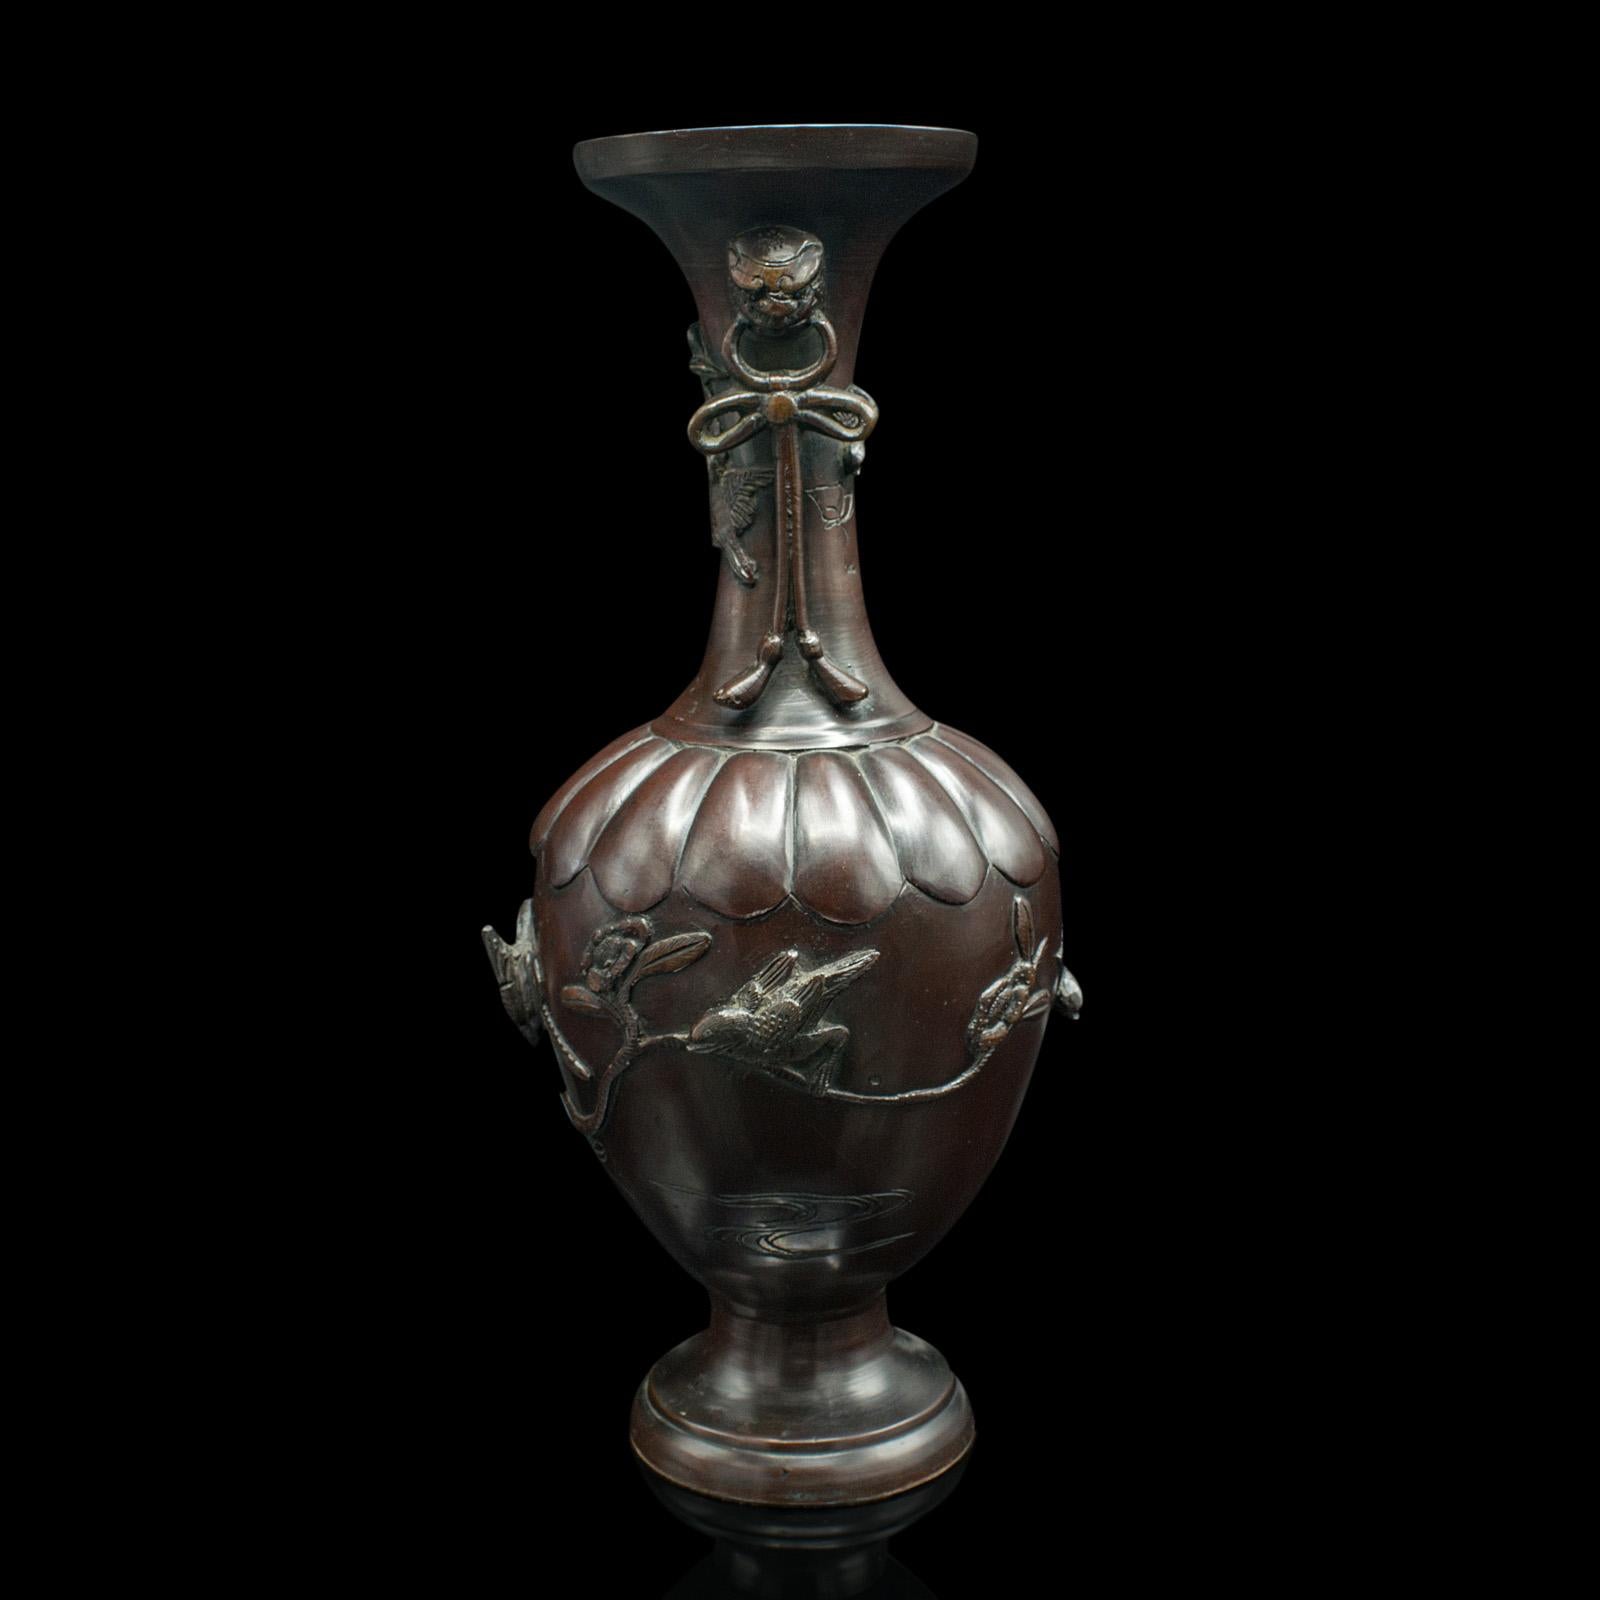 Il s'agit d'un vase à tige décoratif ancien. Urne balustre japonaise en bronze de l'ère Meiji, datant de la fin de la période victorienne, vers 1880.

Forme traditionnelle de balustre avec de superbes détails d'oiseaux en relief.
Patine d'ancienneté